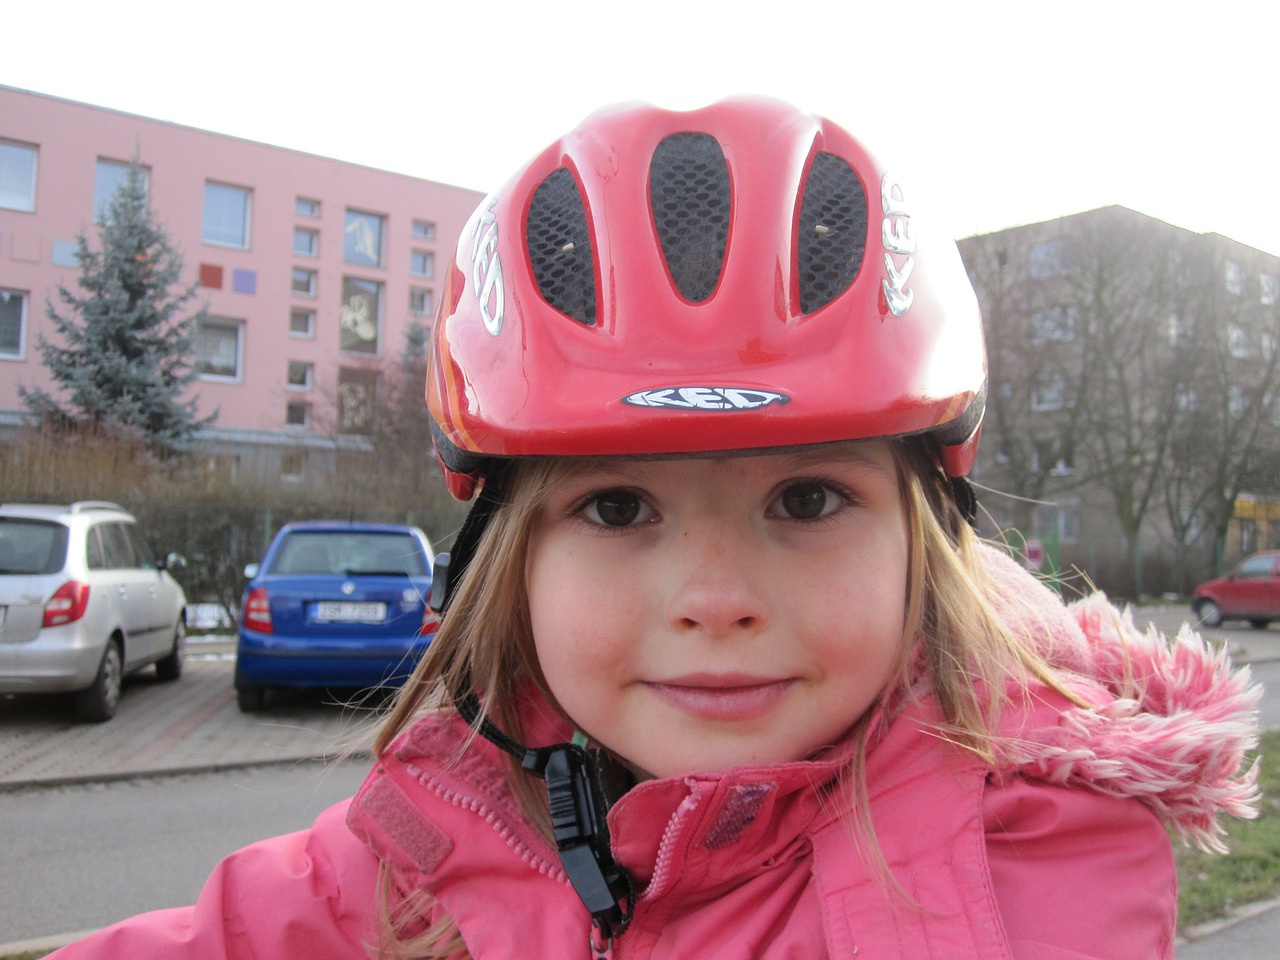 helmet bicycle helmet girl free photo